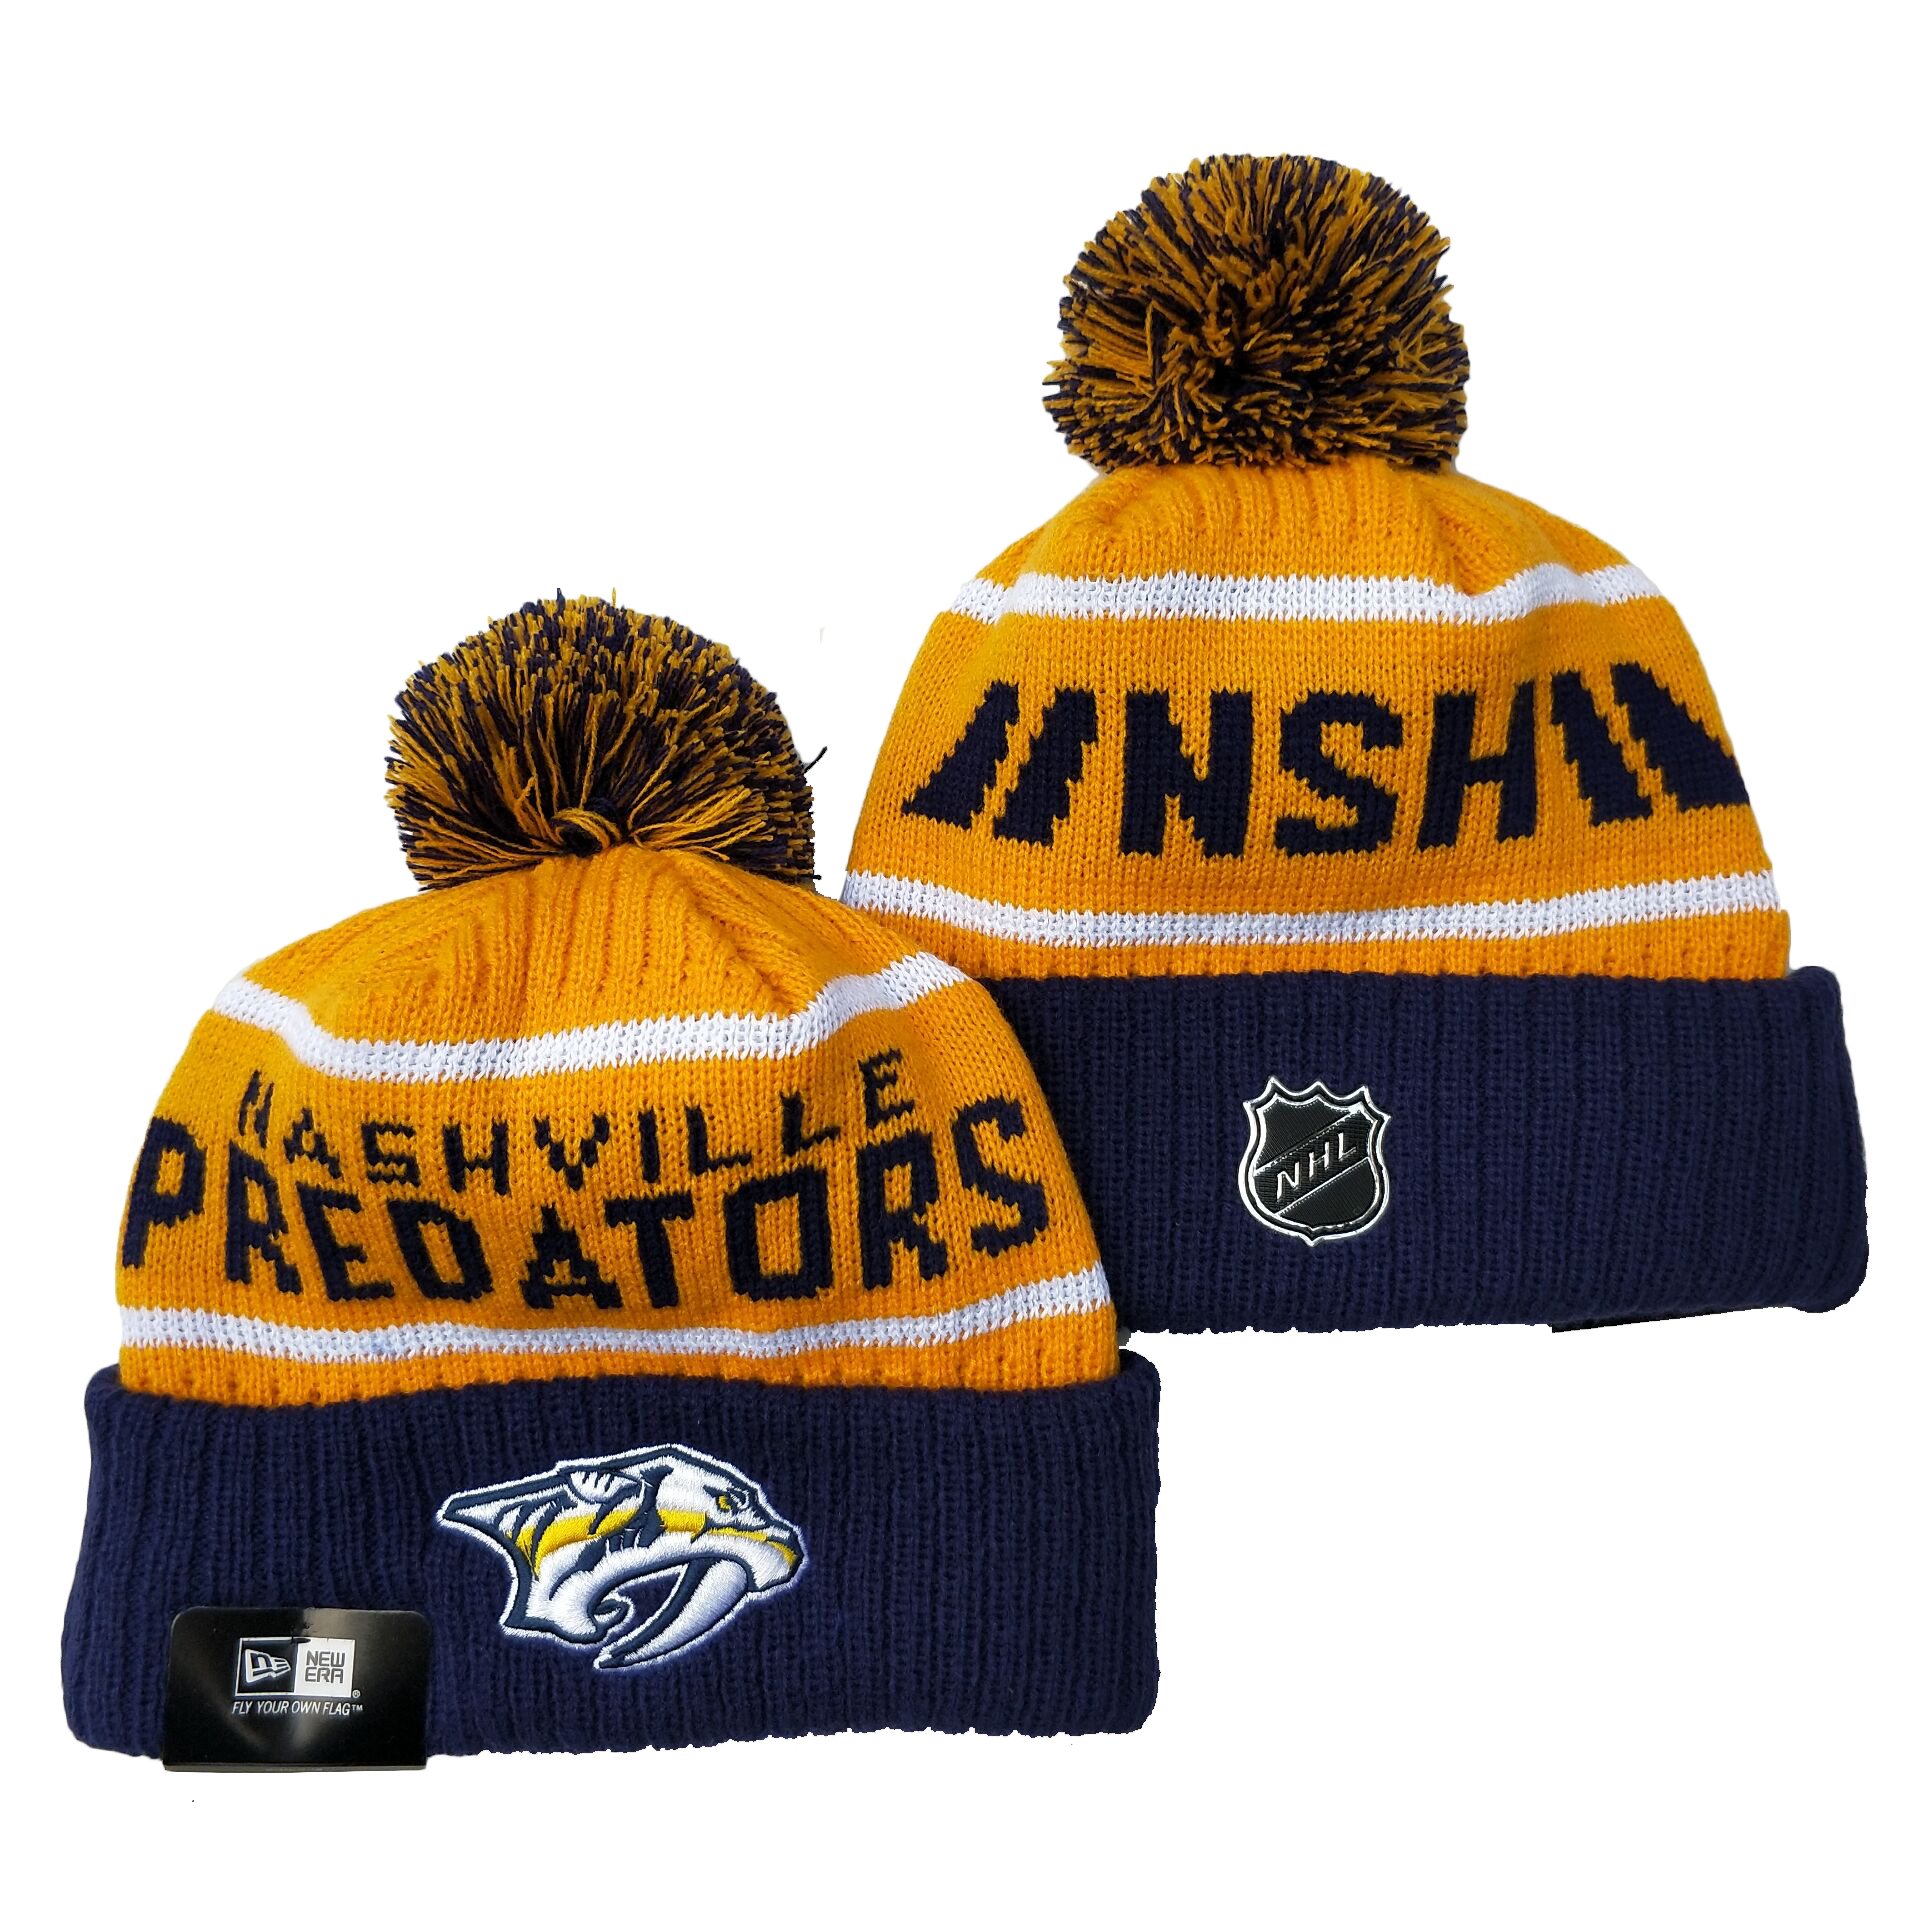 Nashville Predators Knit Hats 002